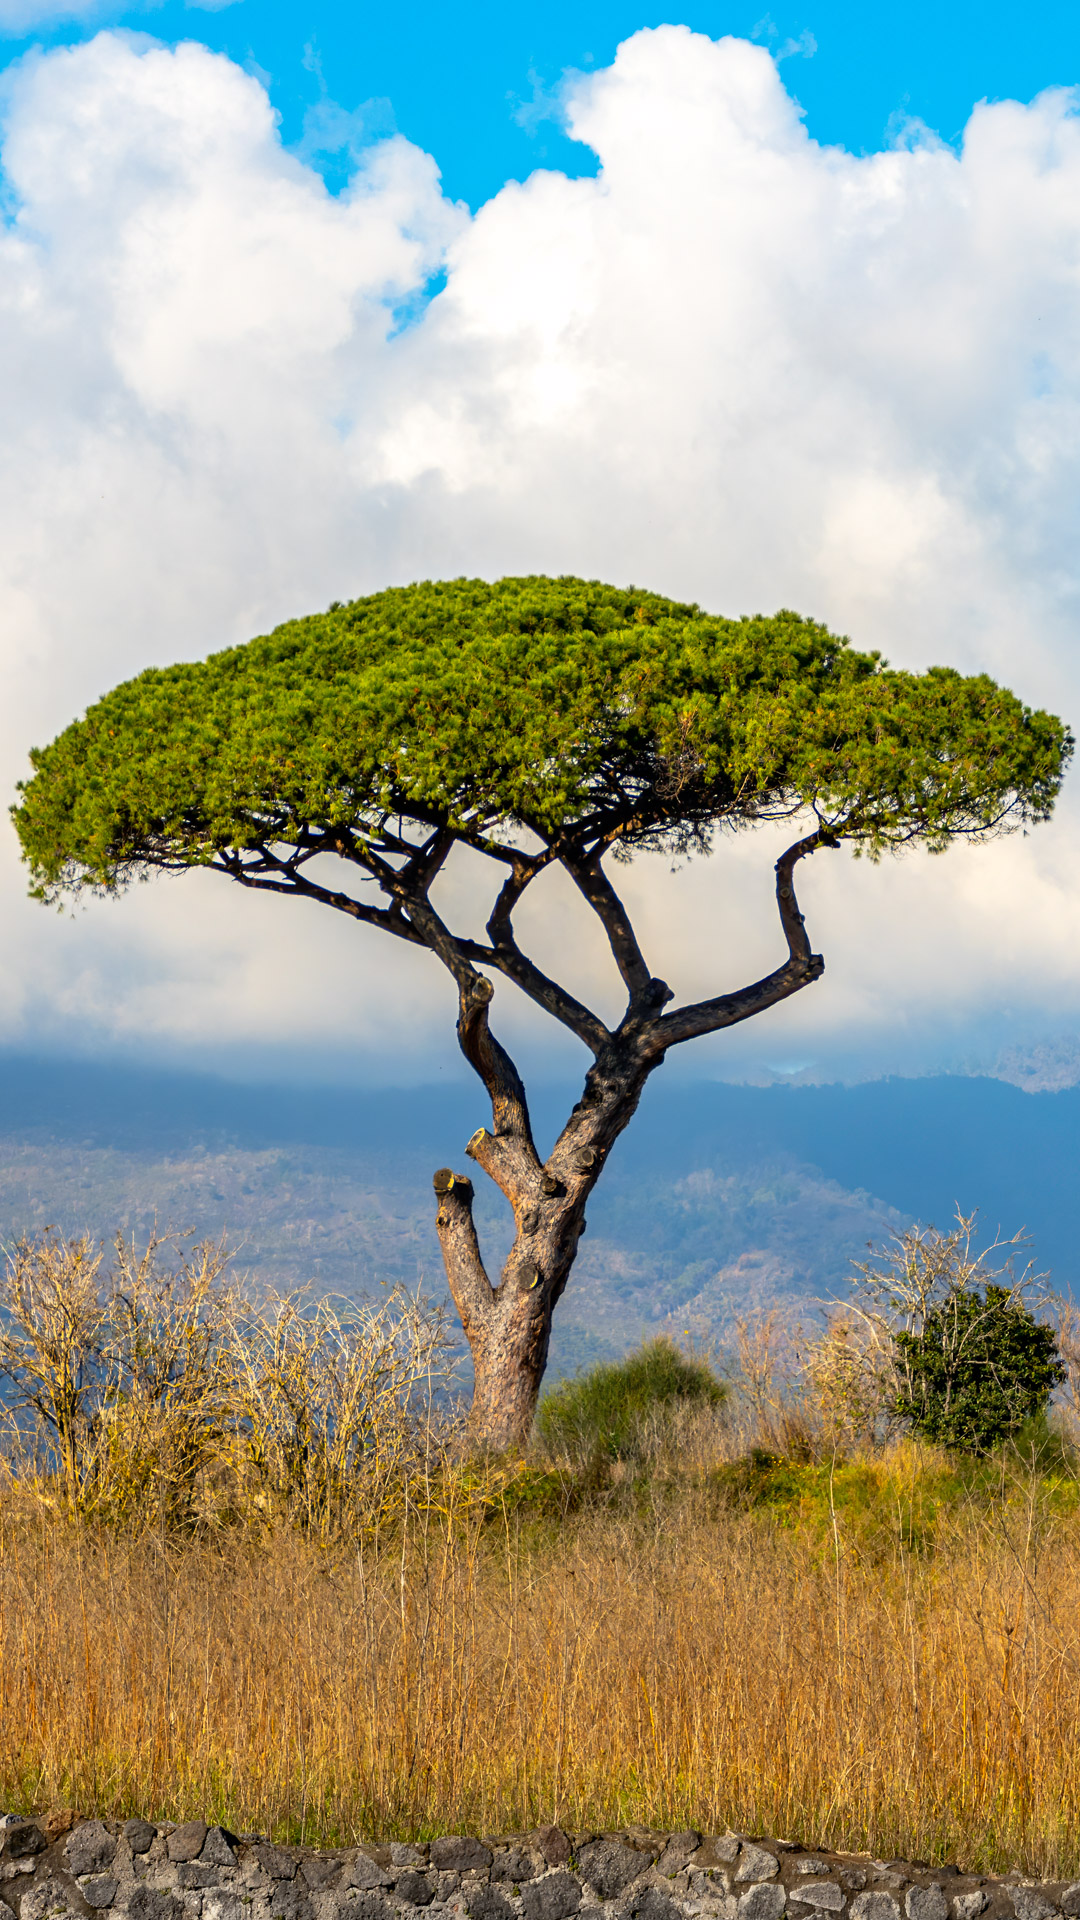 Aventurez-vous dans la campagne italienne avec notre nouveau fond d'écran pour téléphone, capturant la beauté sereine de la nature avec un arbre solitaire se dressant fièrement sur fond de ciel clair.